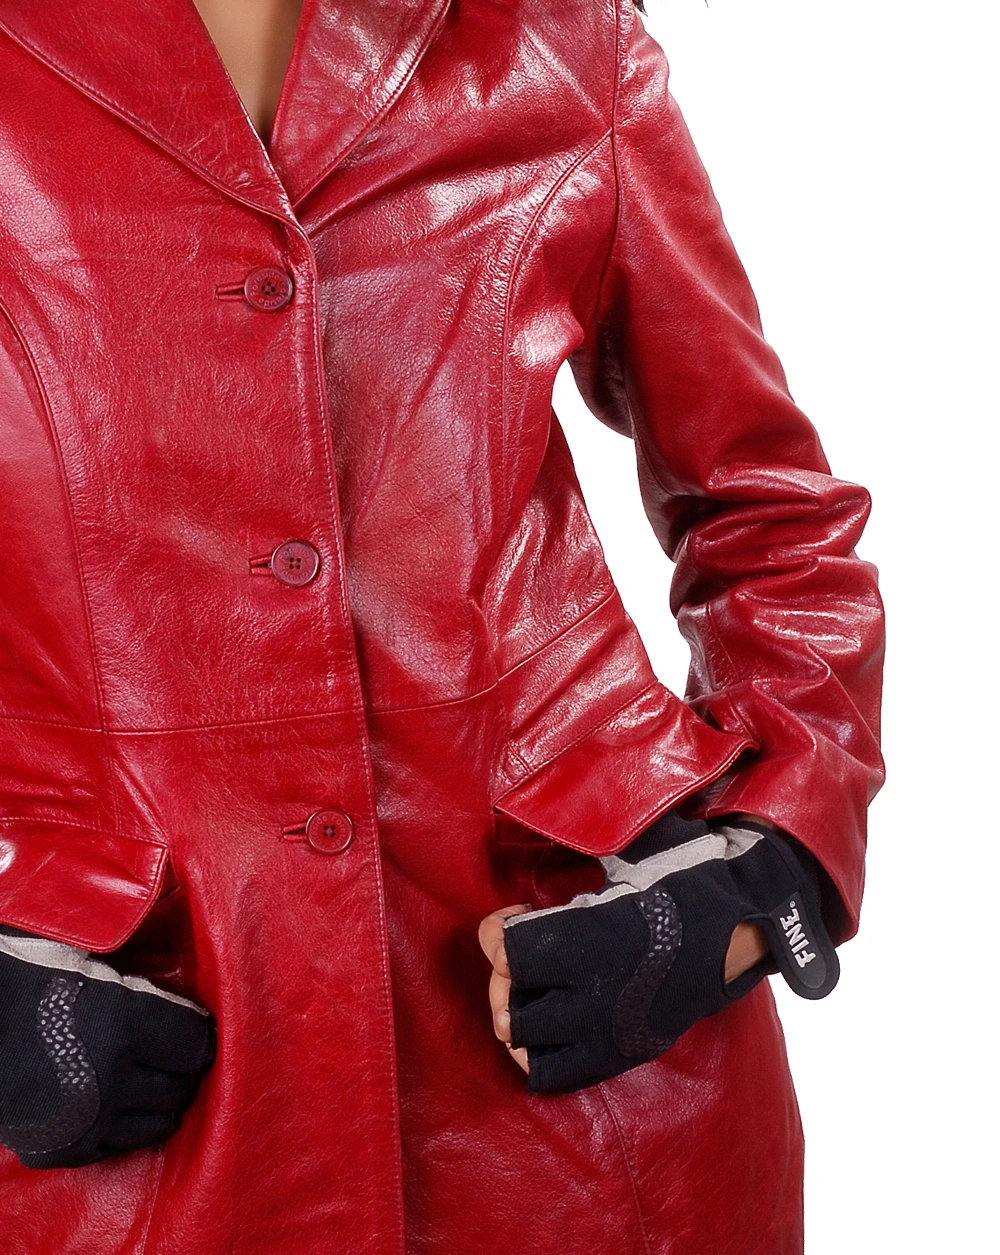 Womens Leather Coat Medium